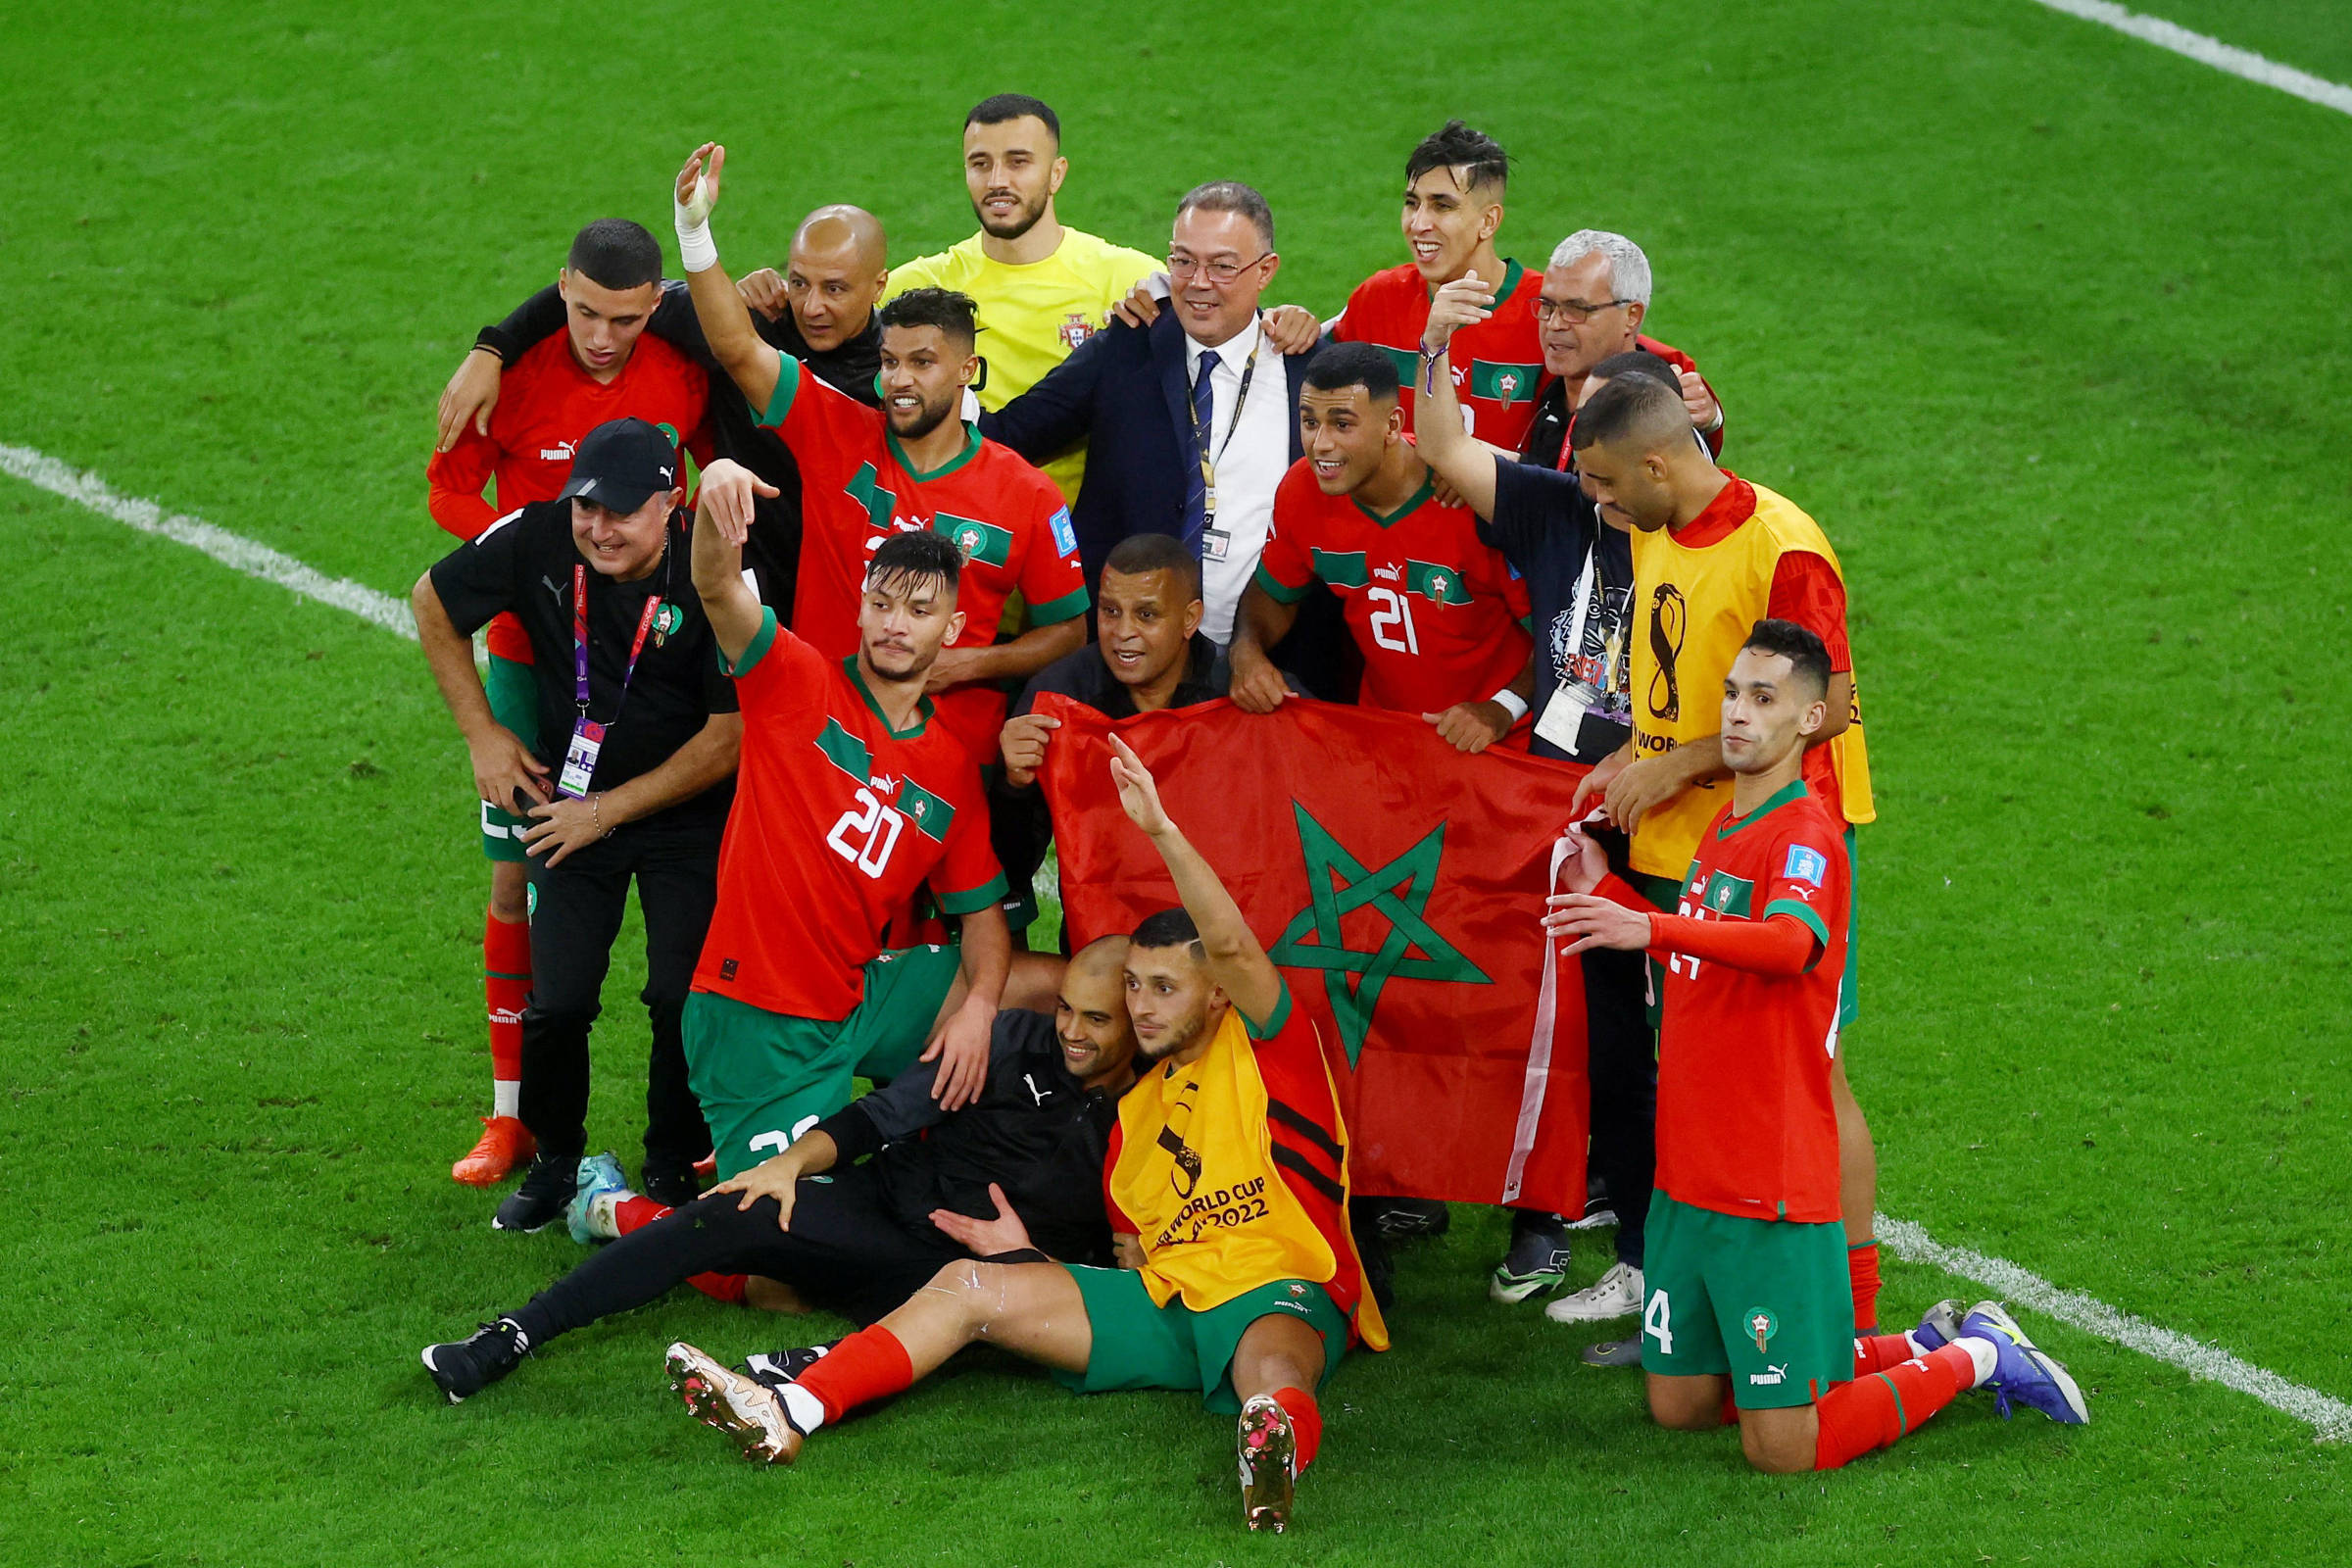 Marrocos é o 4º país africano a chegar às quartas de uma Copa do Mundo -  06/12/2022 - UOL Esporte